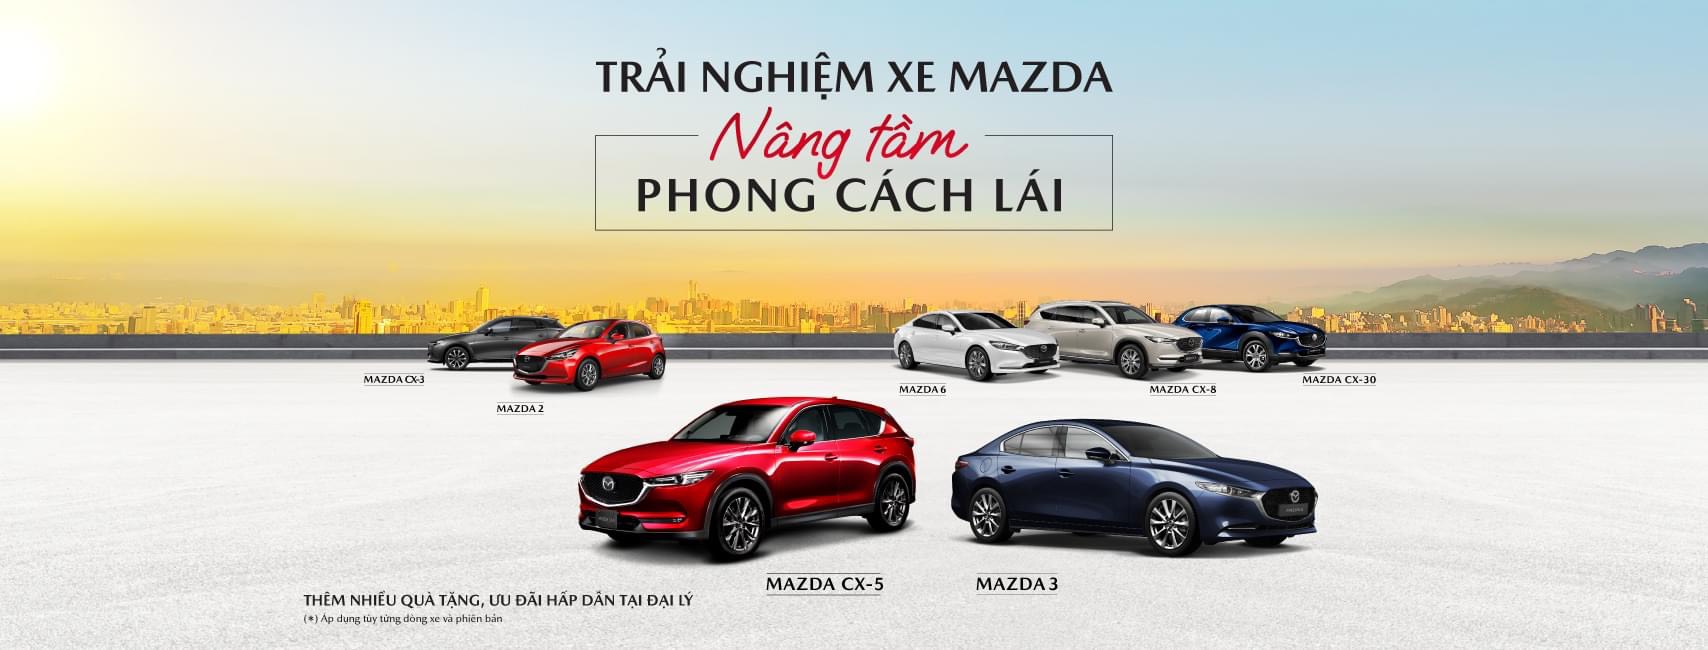 Đại lý Mazda Vinh Nghệ An